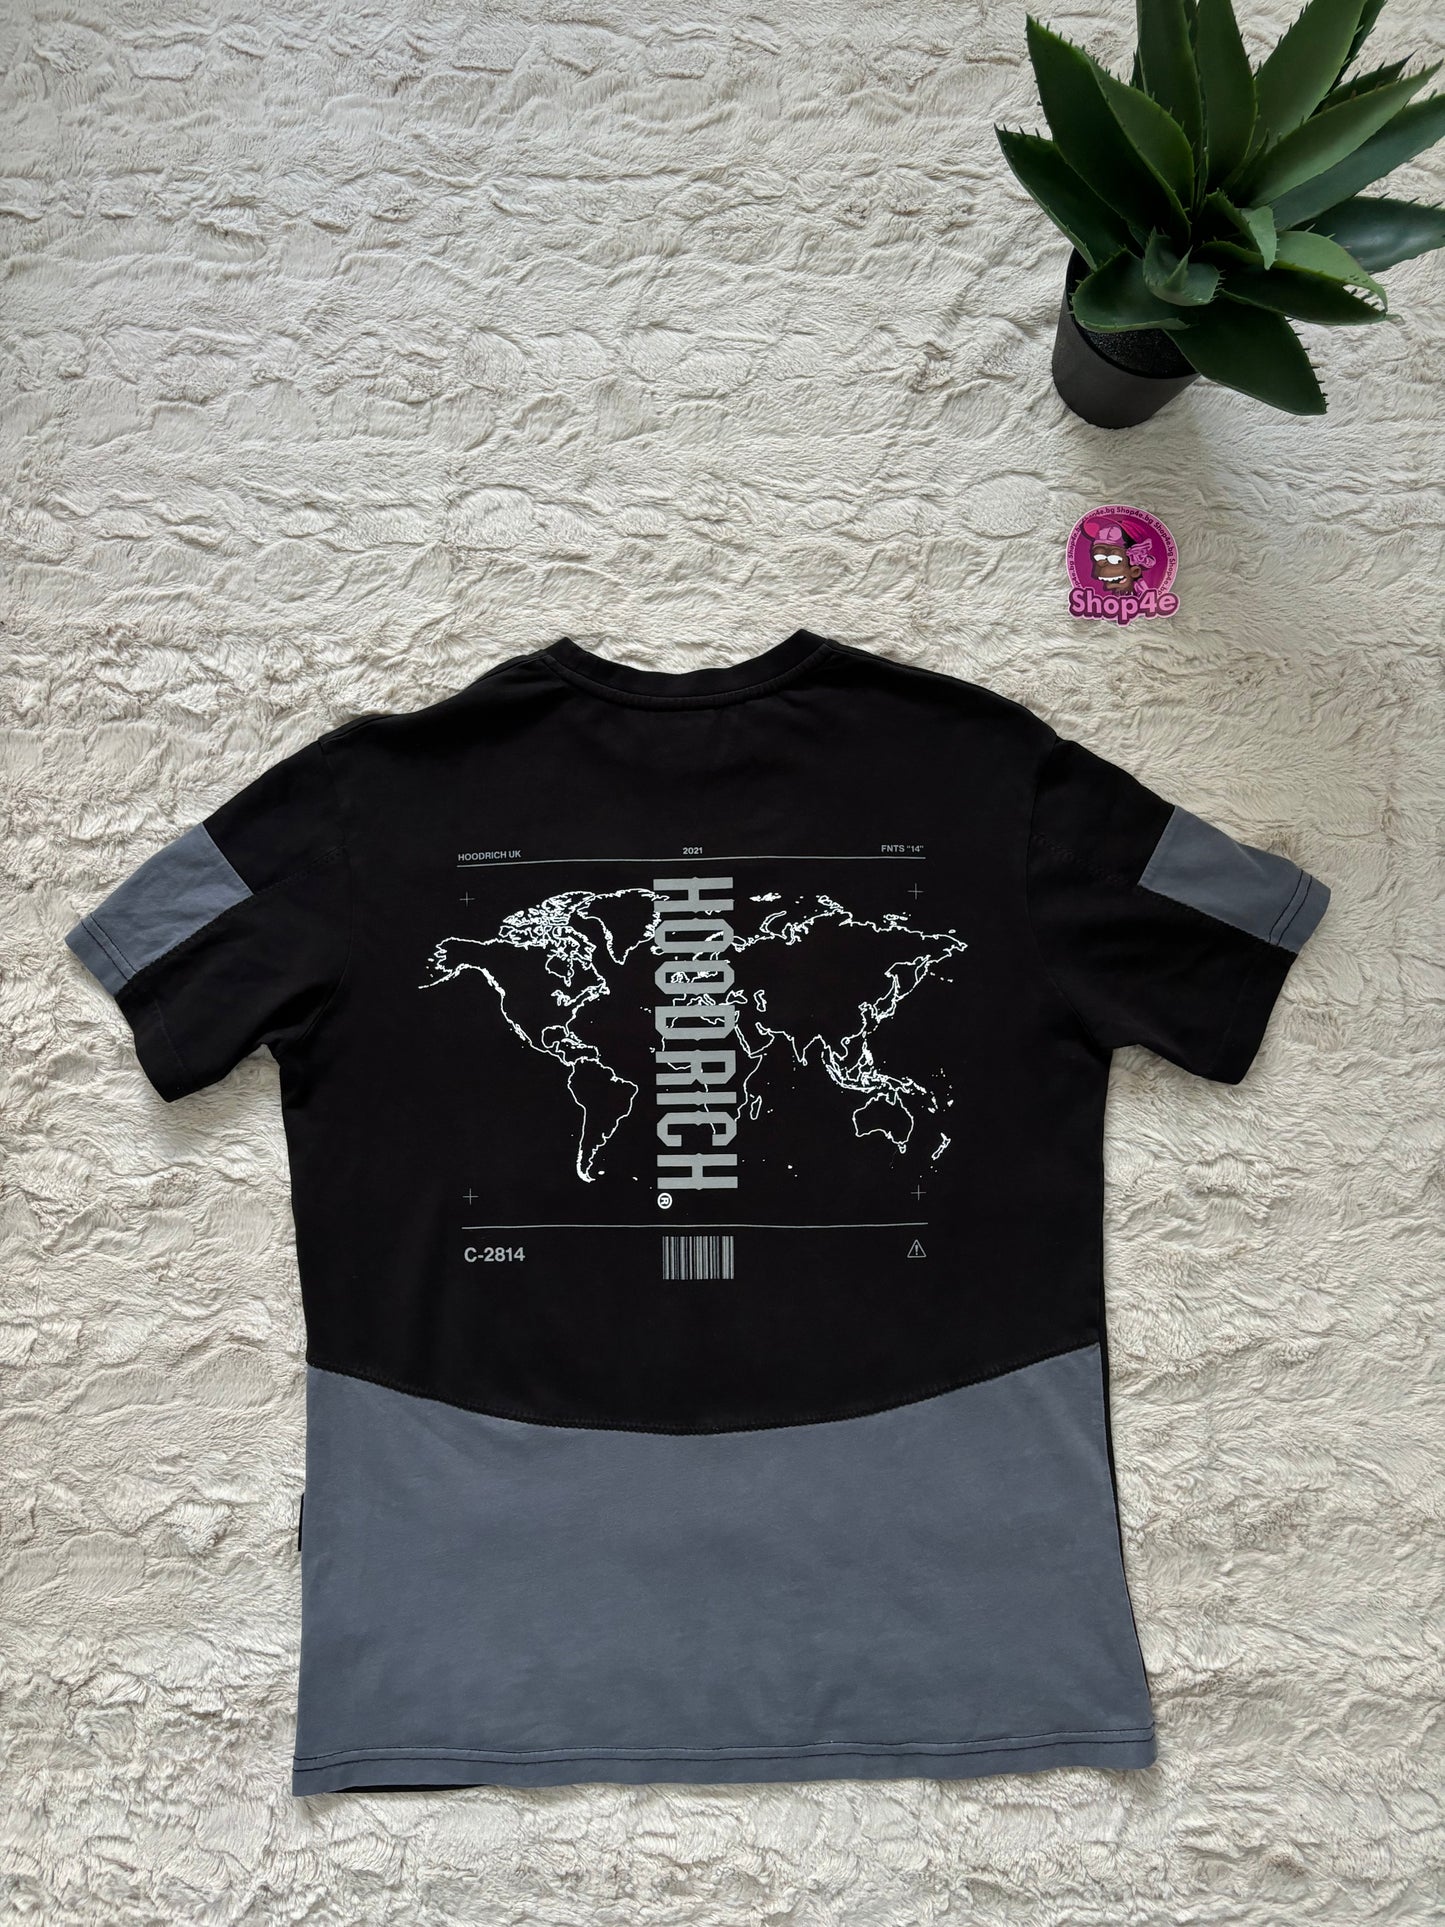 HOODRICH T-Shirt